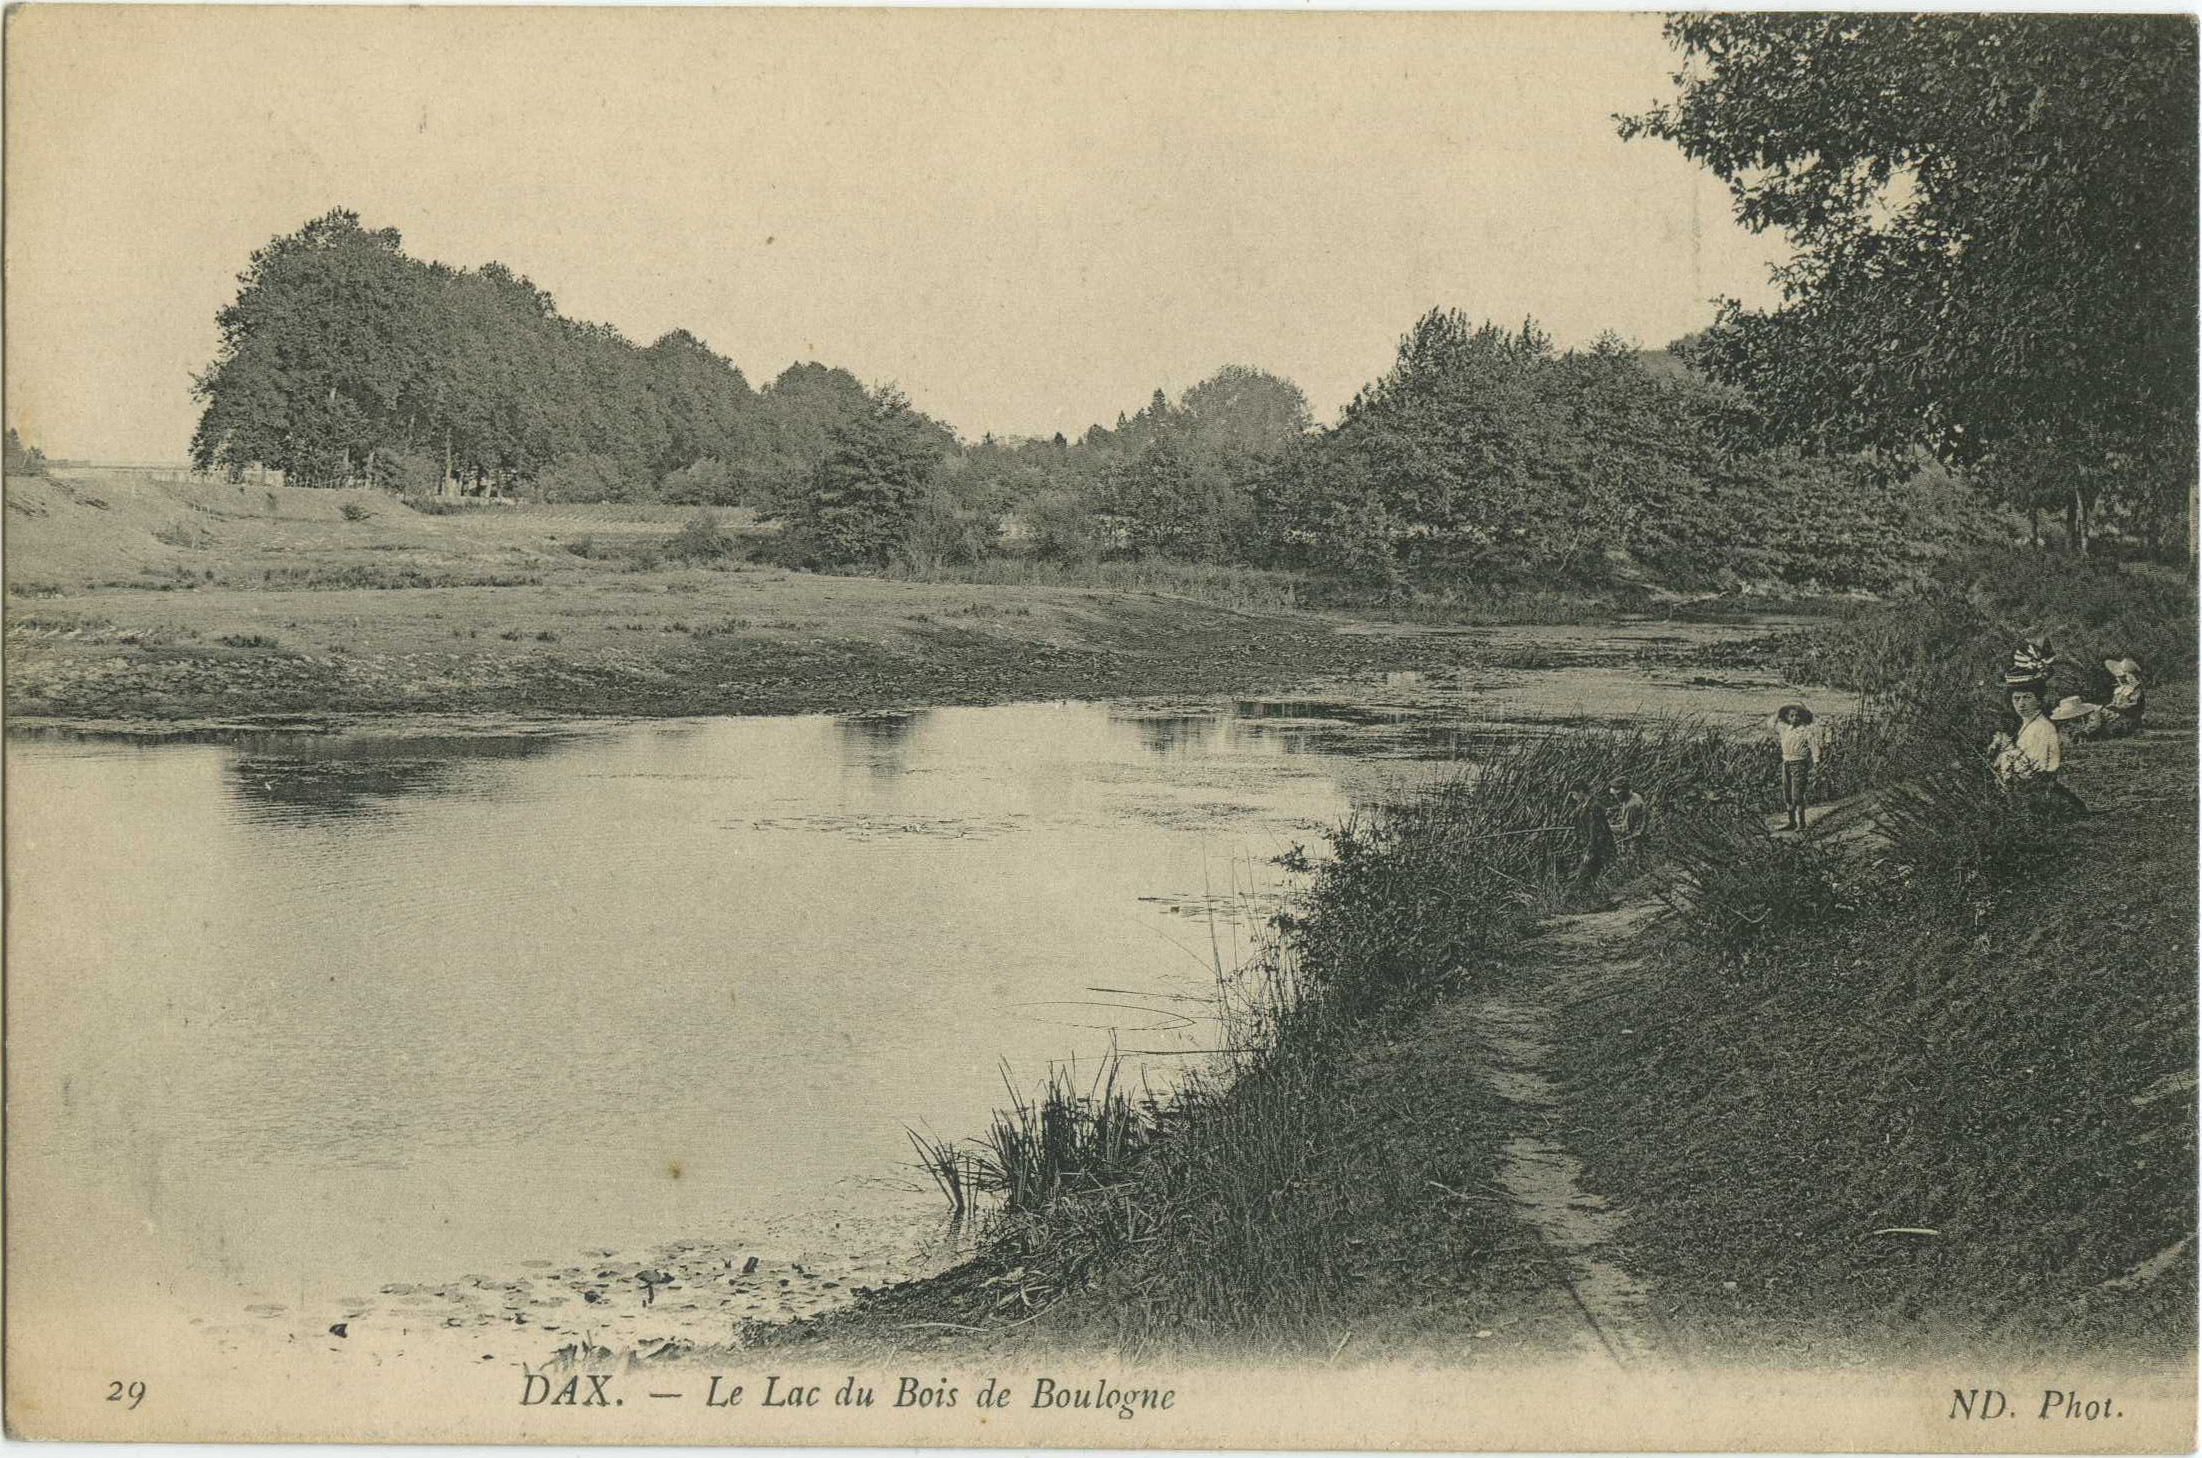 Dax - Le Lac du Bois de Boulogne